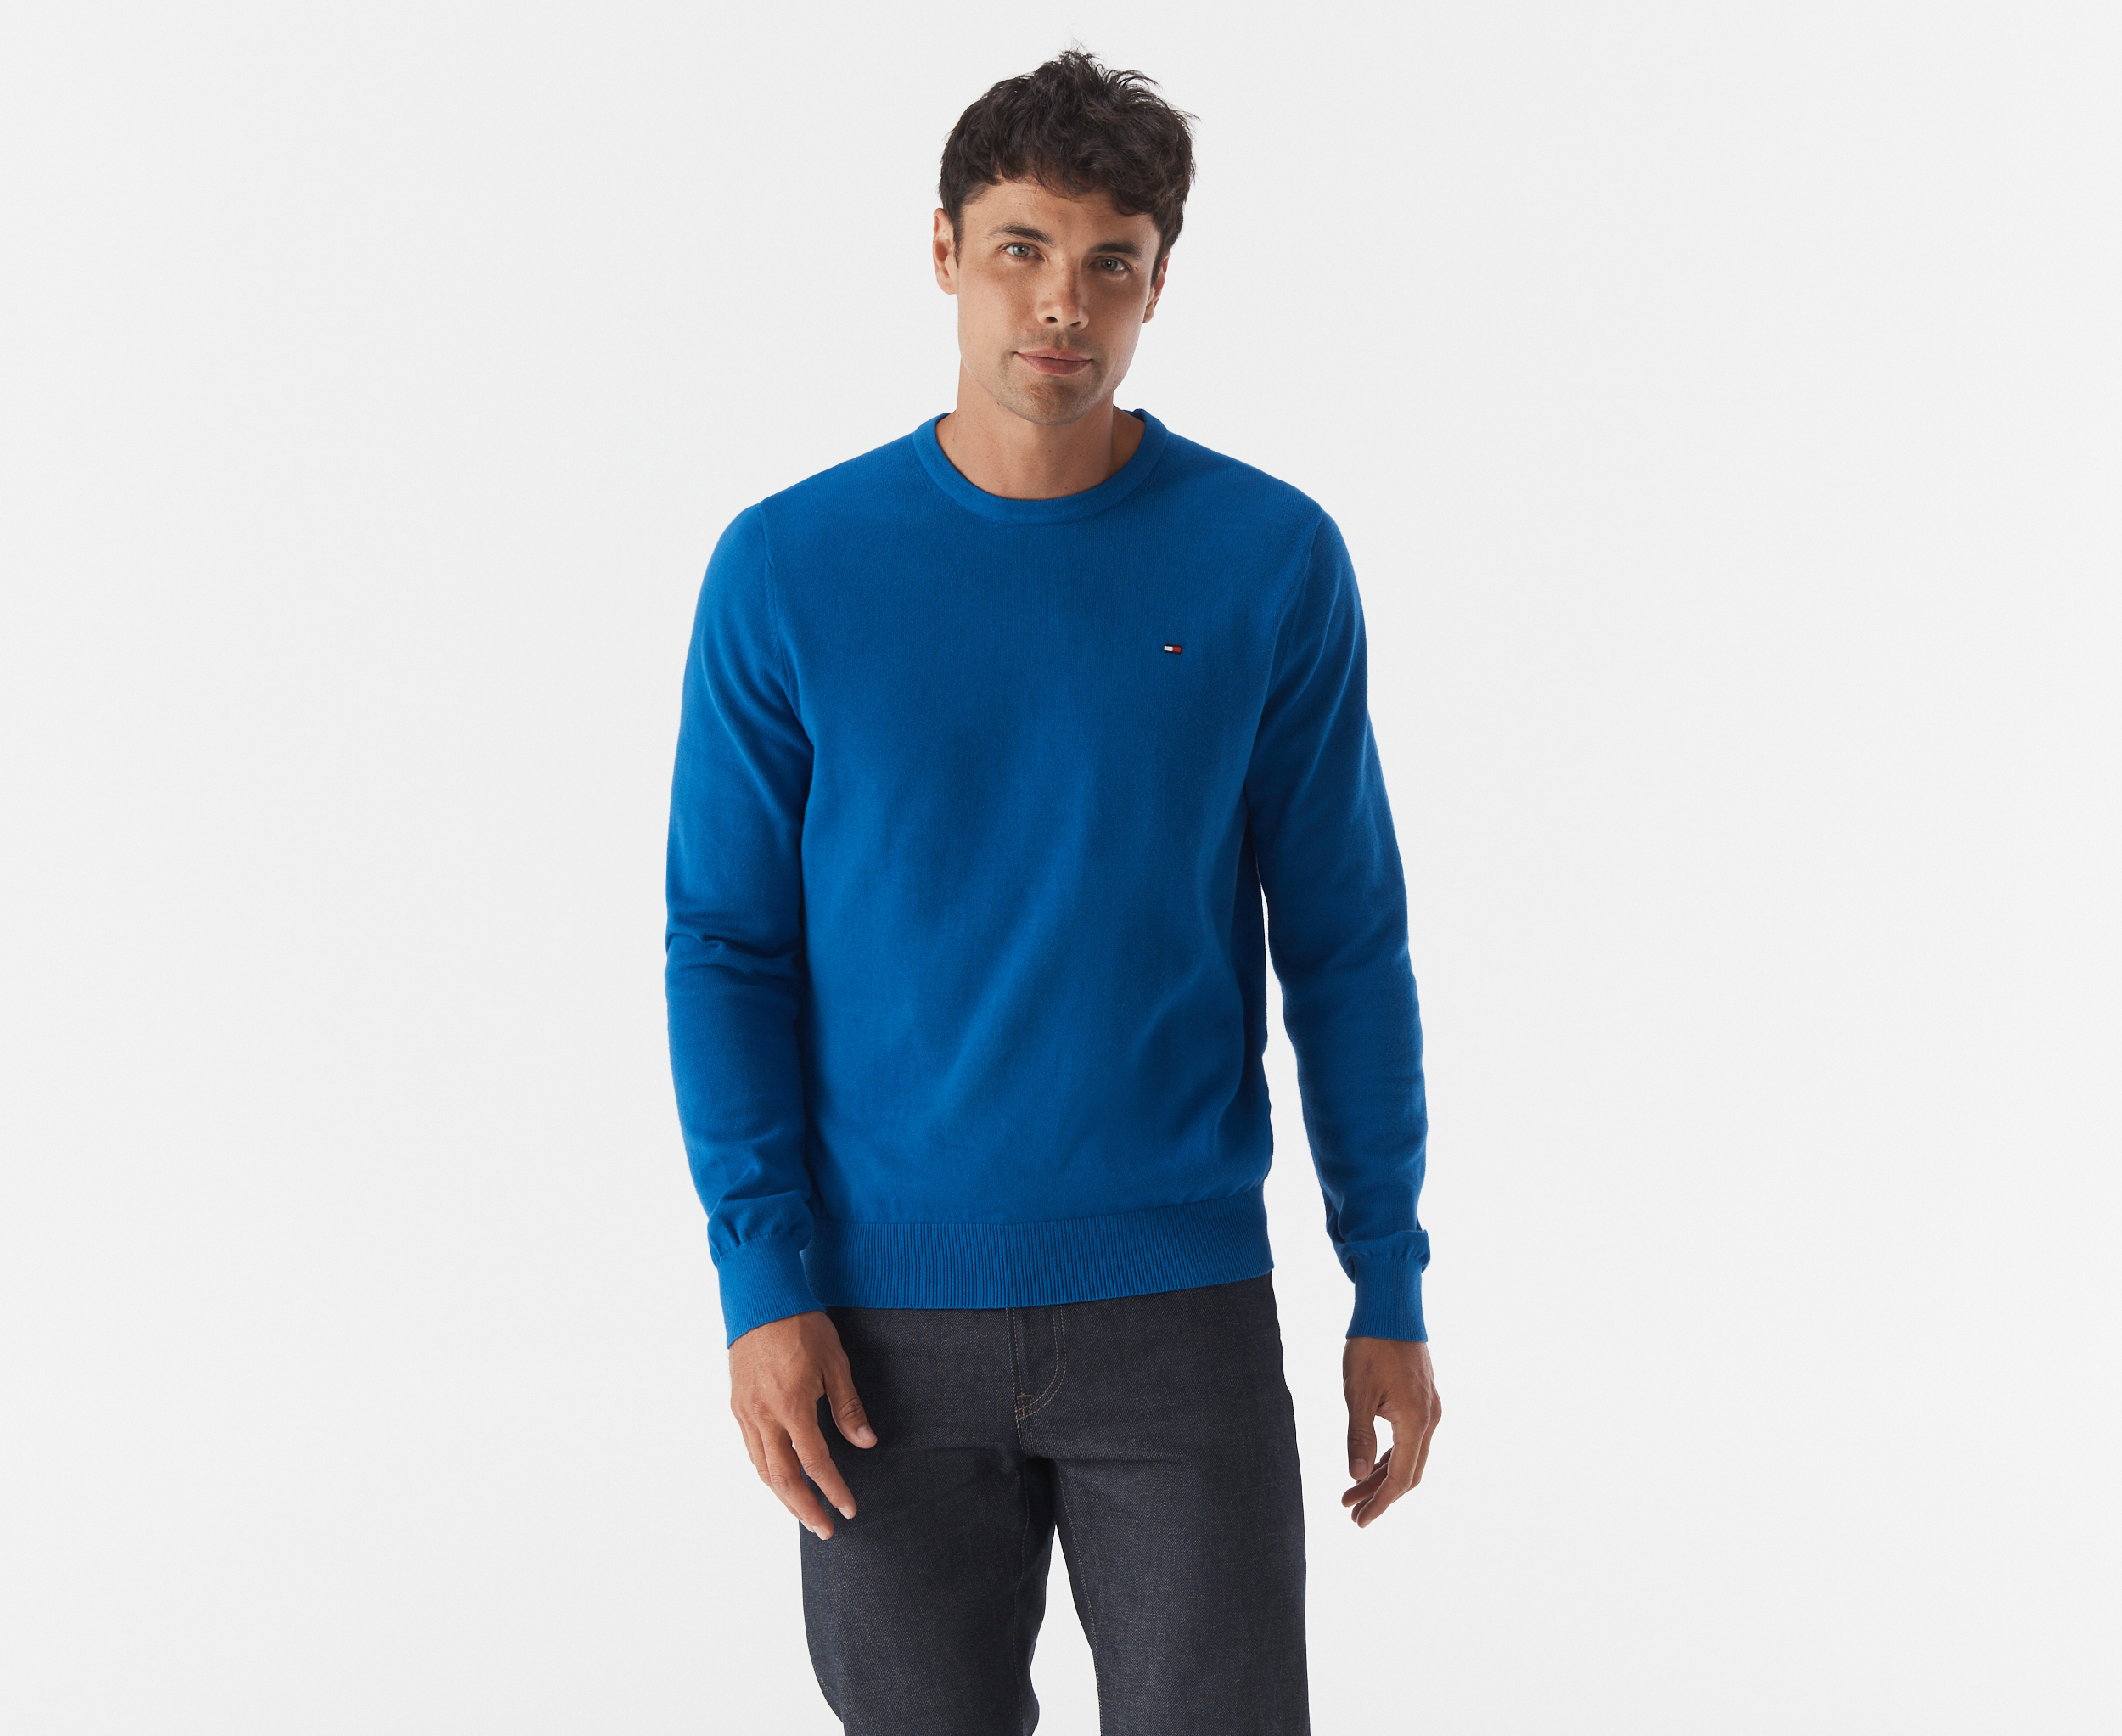 Tommy Hilfiger Men's Atlantic Crewneck Sweater - Royalty | Catch.com.au